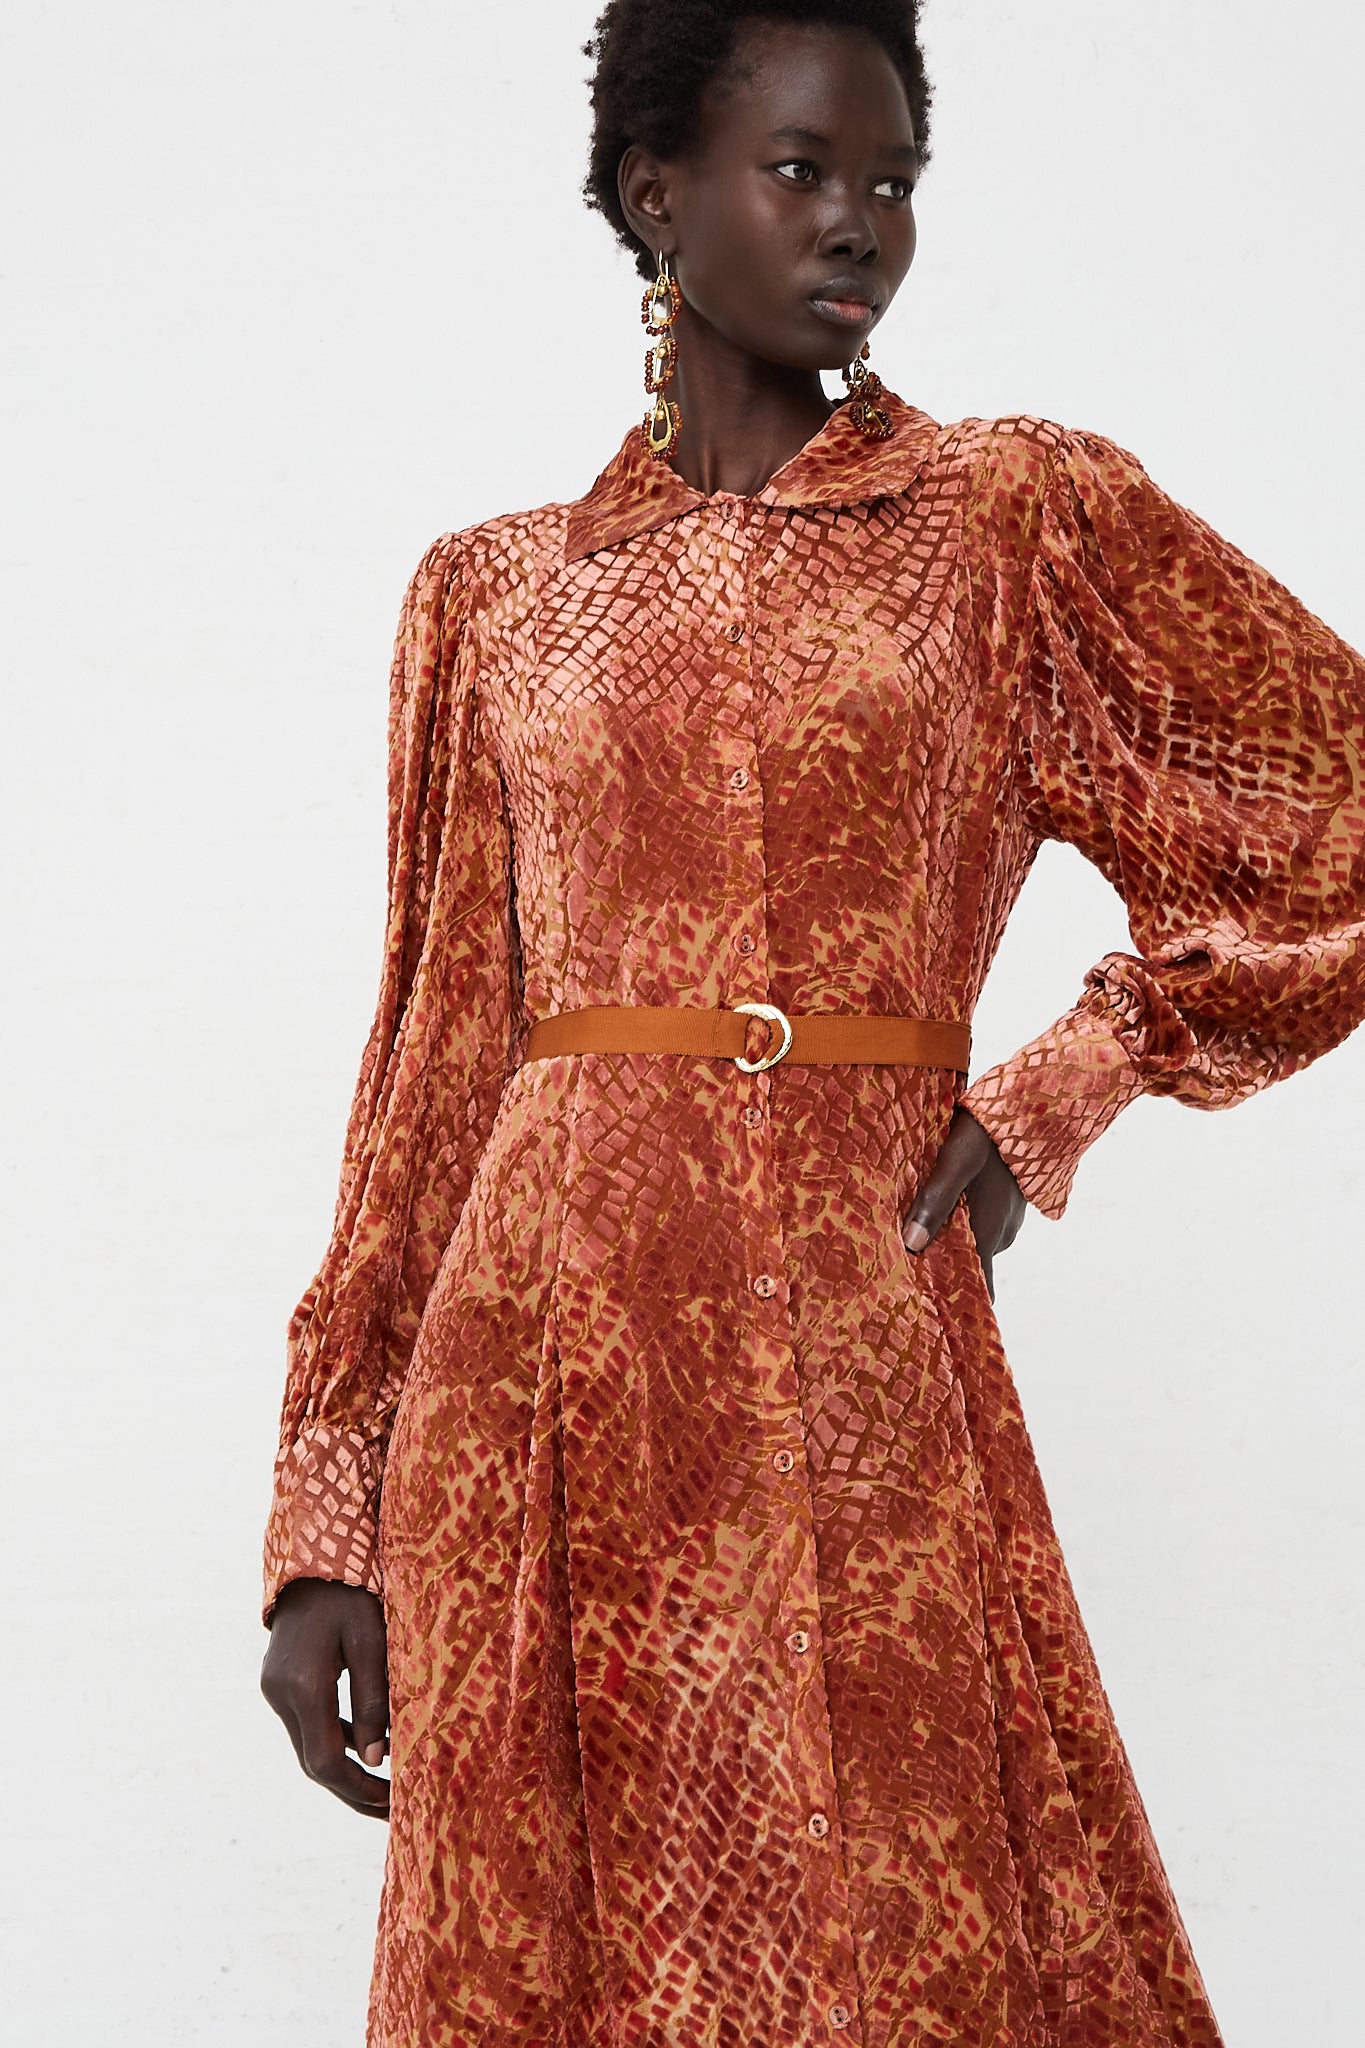 Thalia Velvet Dress in Sienna by Ulla Johnson for Oroboro Front